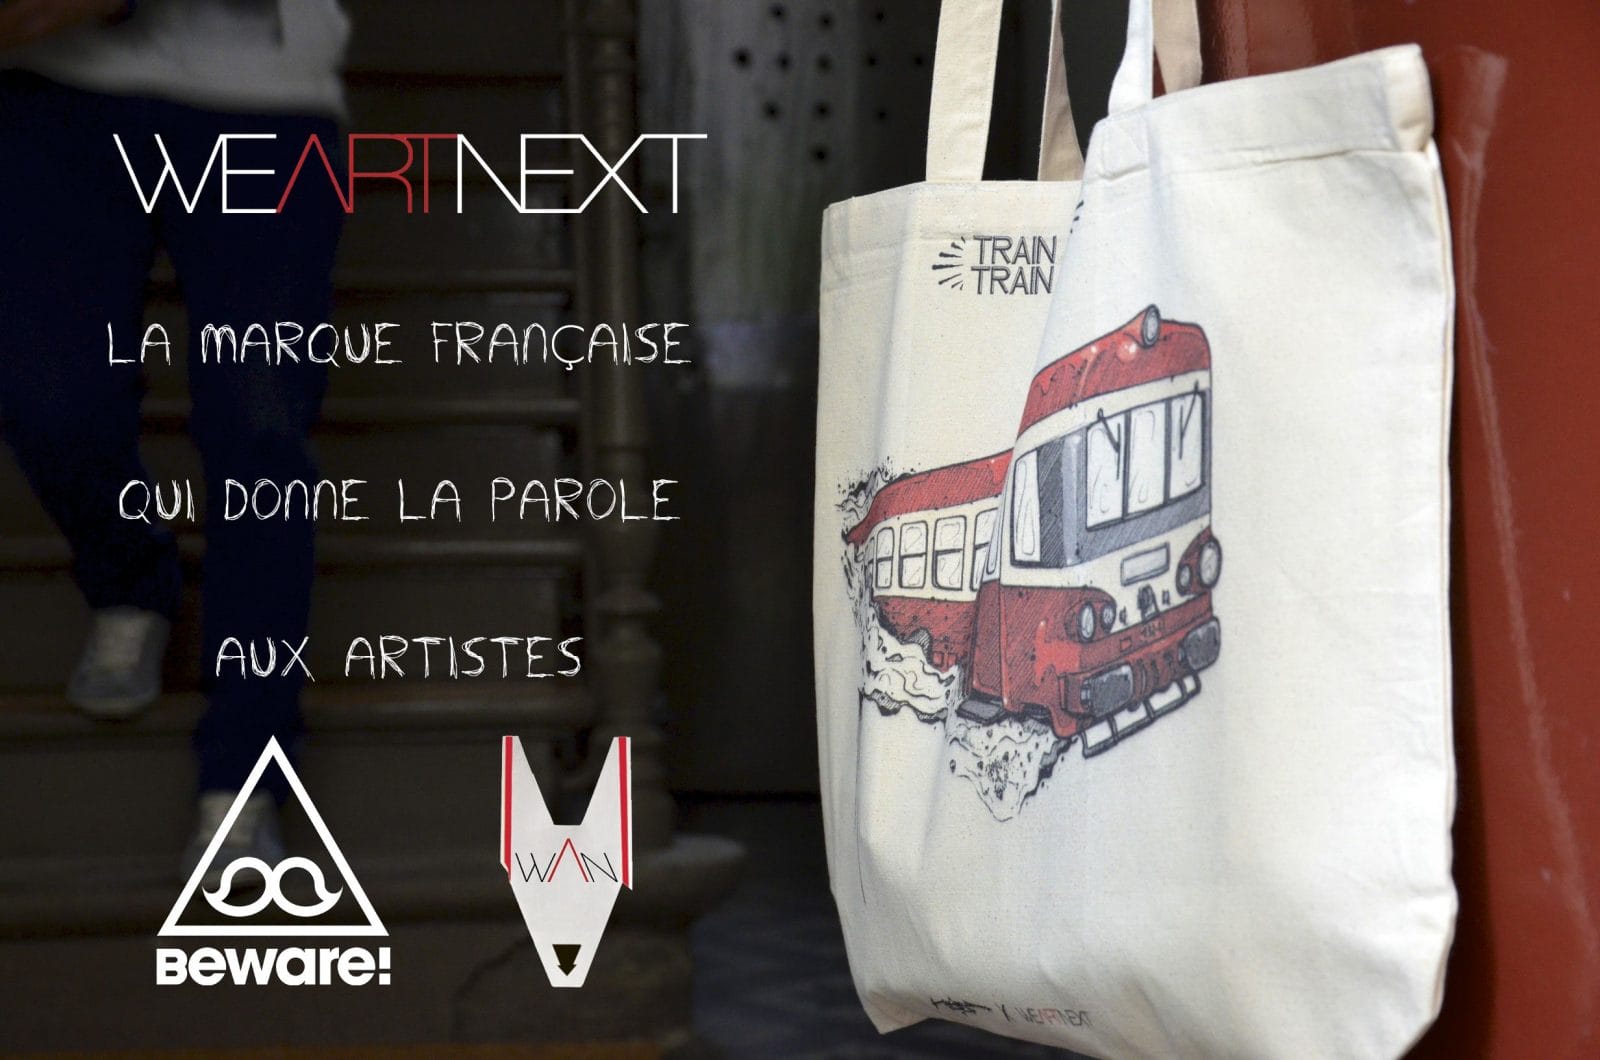 We Art Next - La Marque qui donne la parole aux artistes